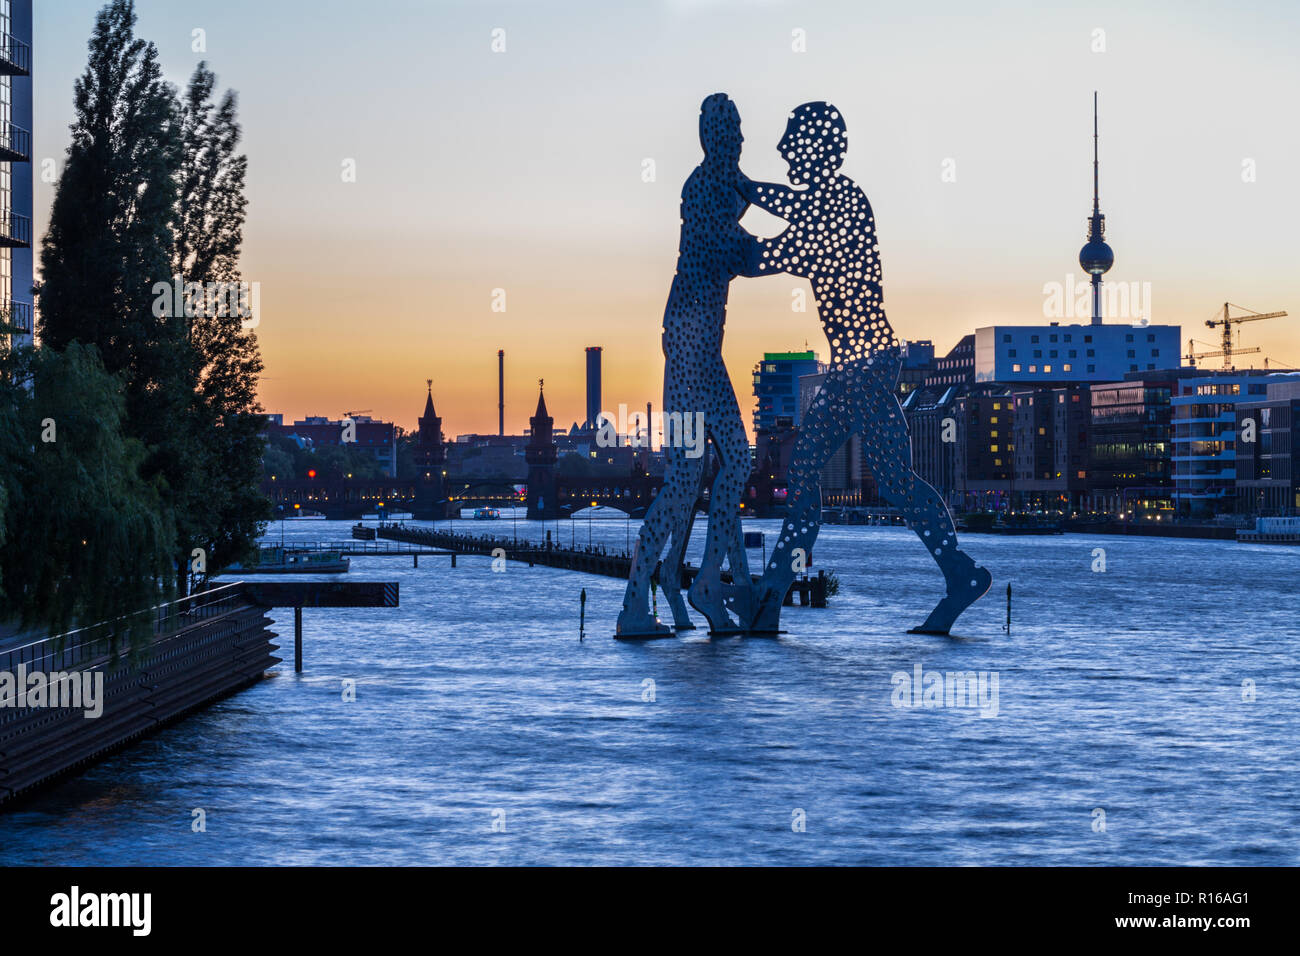 L'homme molécule sculpture par l'artiste Jonathan Borofsky, Spree, à l'arrière Pont Oberbaum et tour de télévision d'Alexanderplatz Banque D'Images